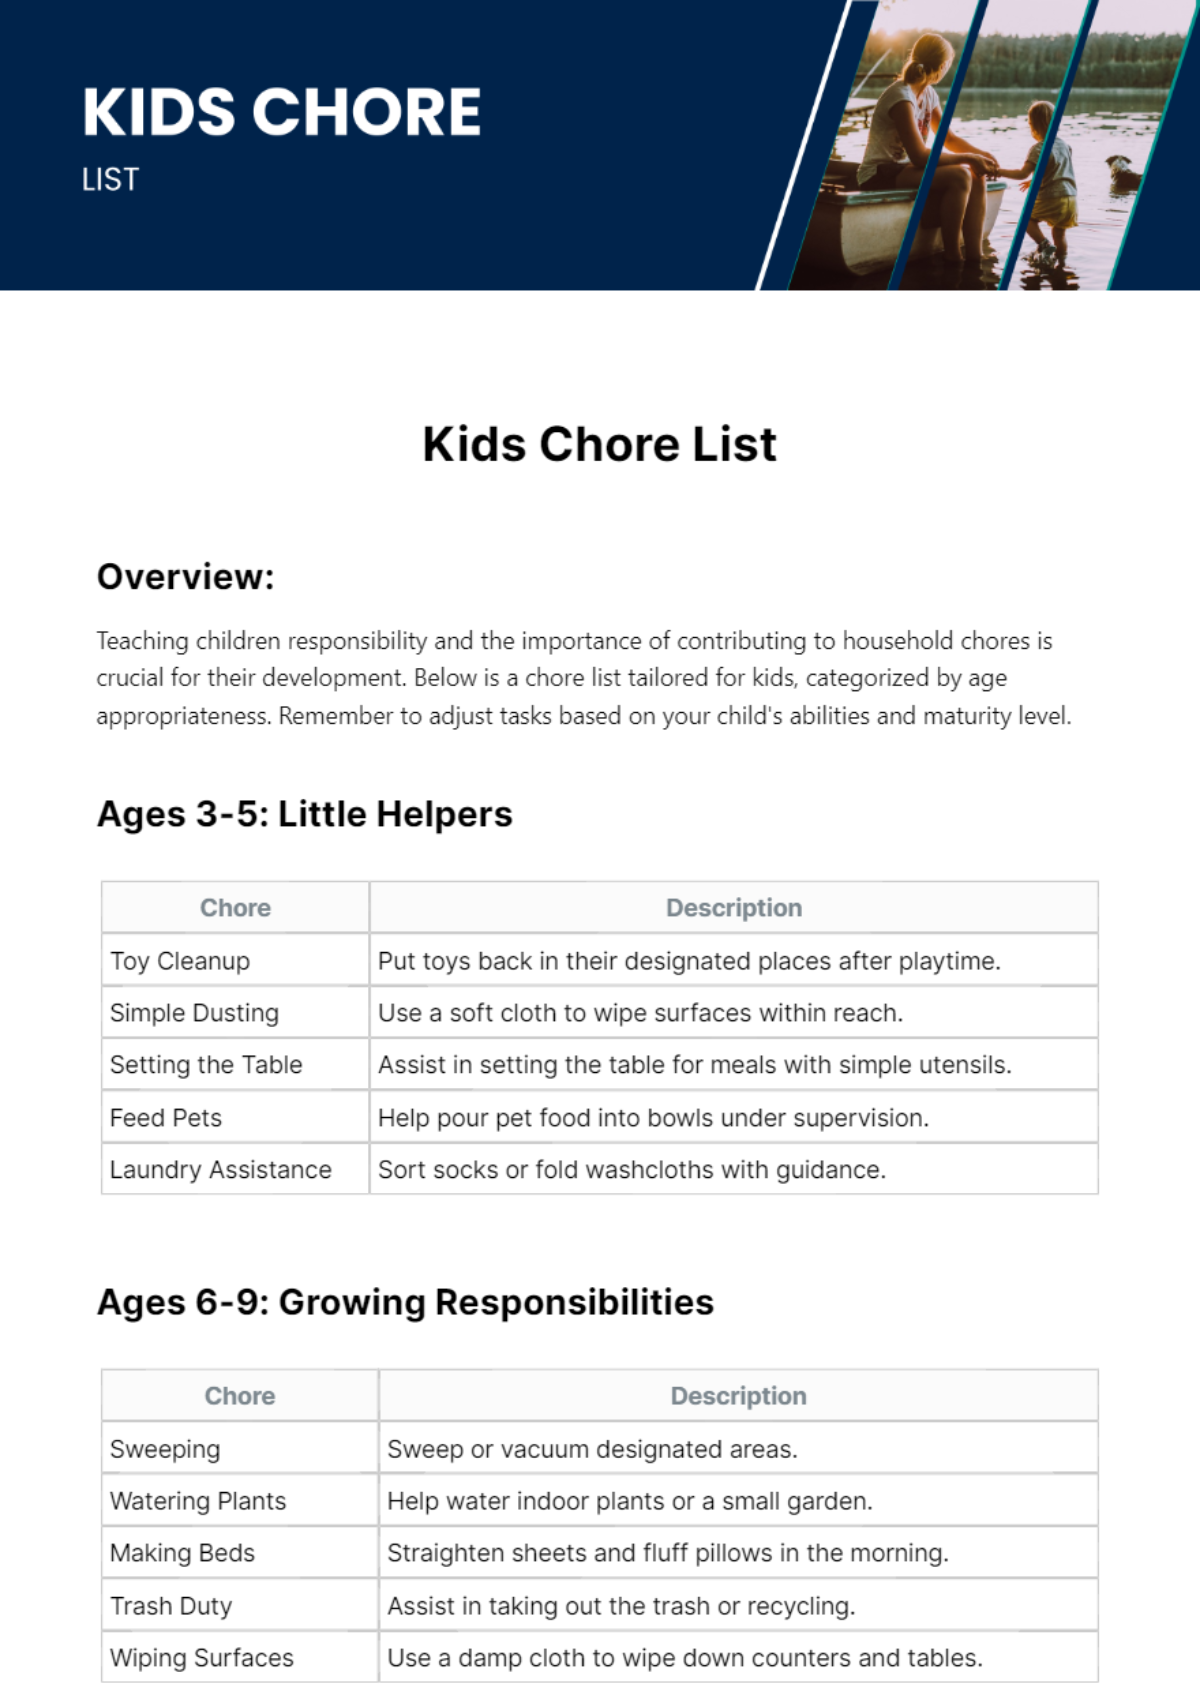 Kids Chore List Template